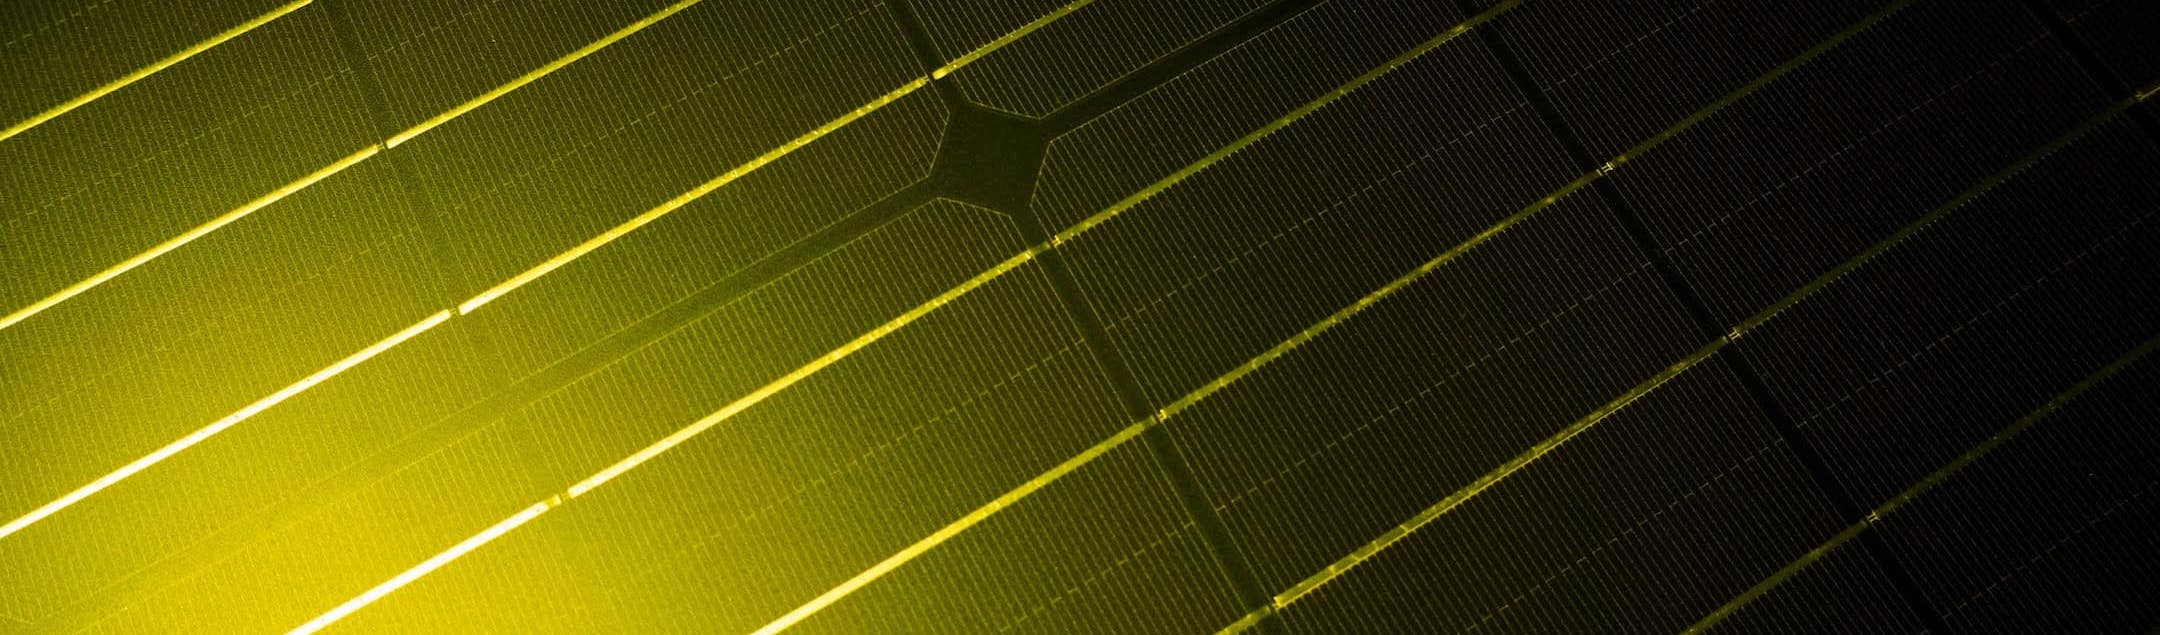 mooie, gedetailleerde weergave van de zonnecellen van een zonne-energiepakket